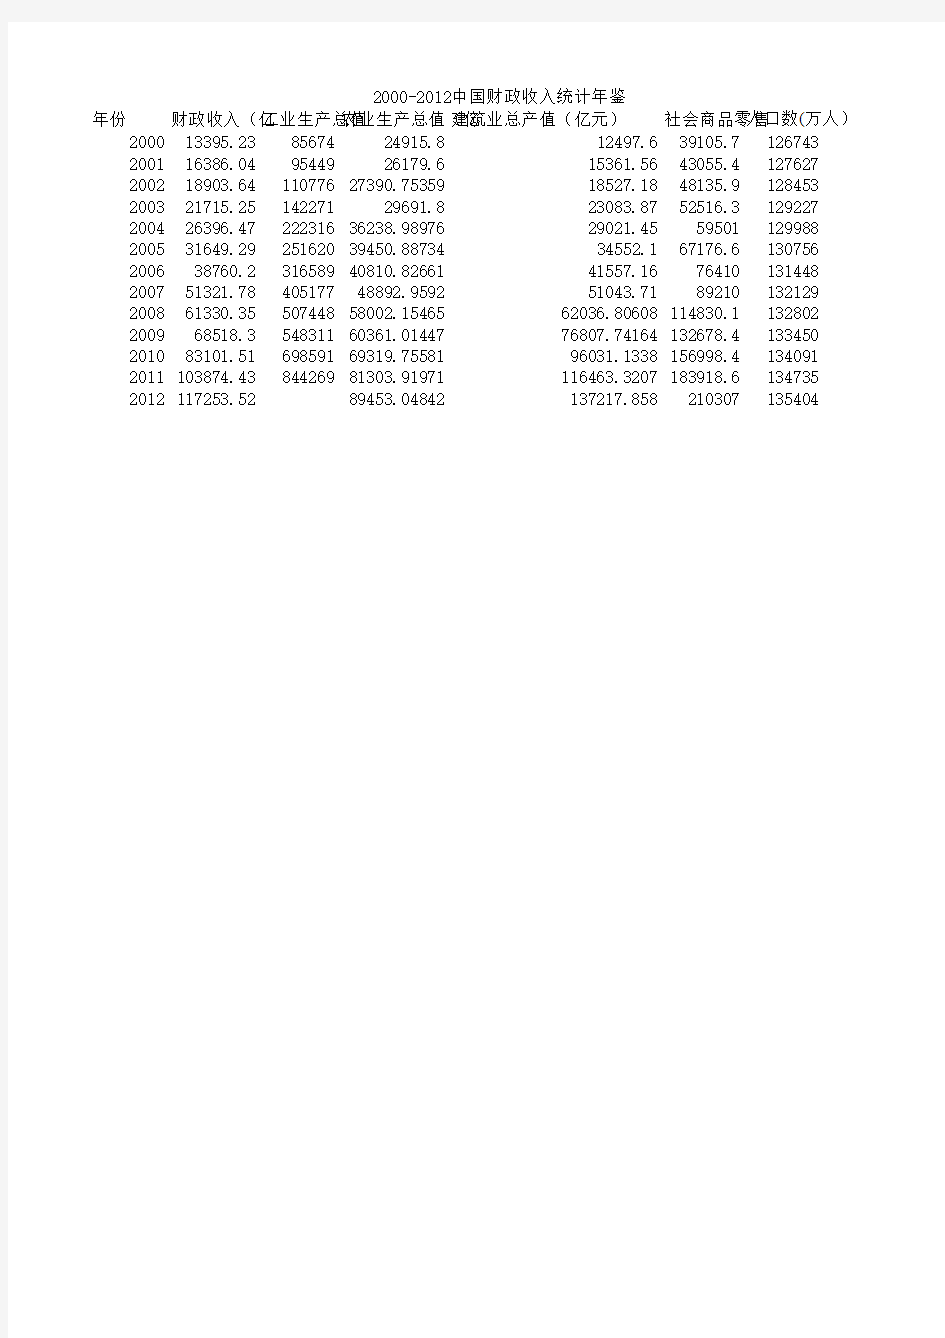 2000-2012财政收入中国统计年鉴数据